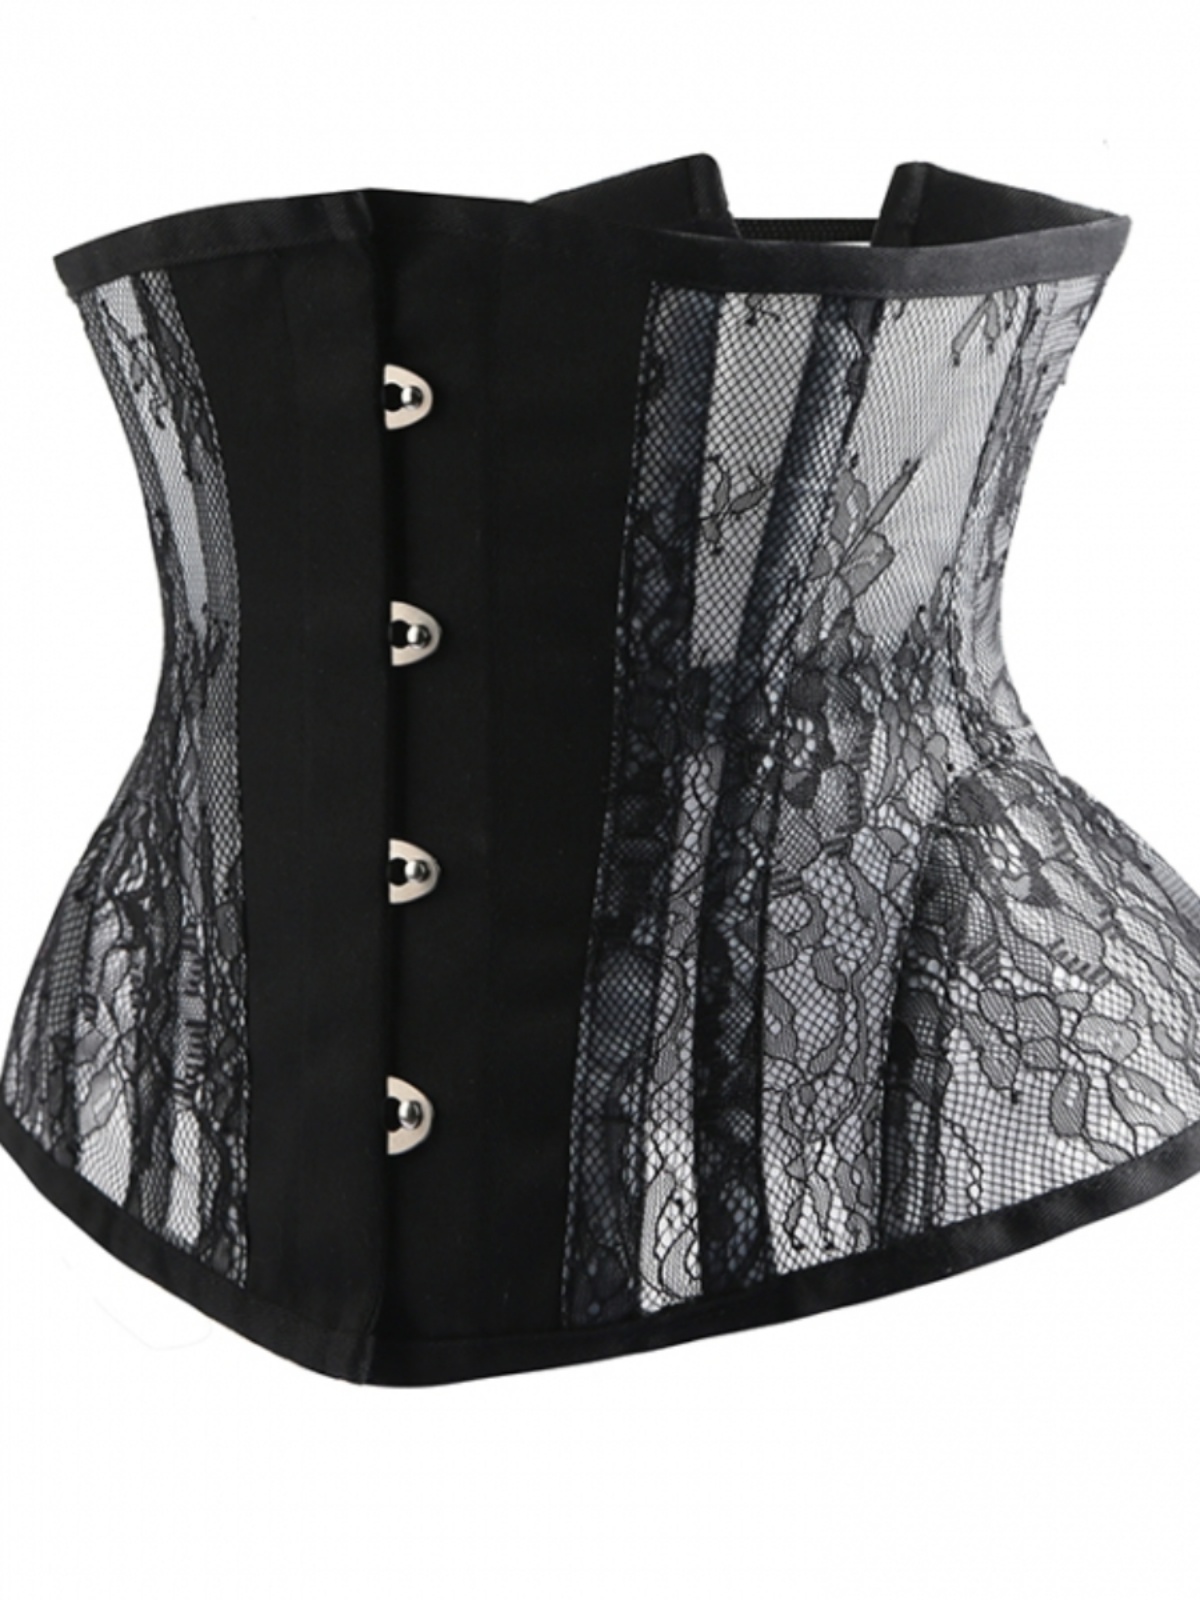 黑色沙漏包跨束身衣腰封马甲蕾丝胸衣婚纱corset钢骨瘦身束腰内衣